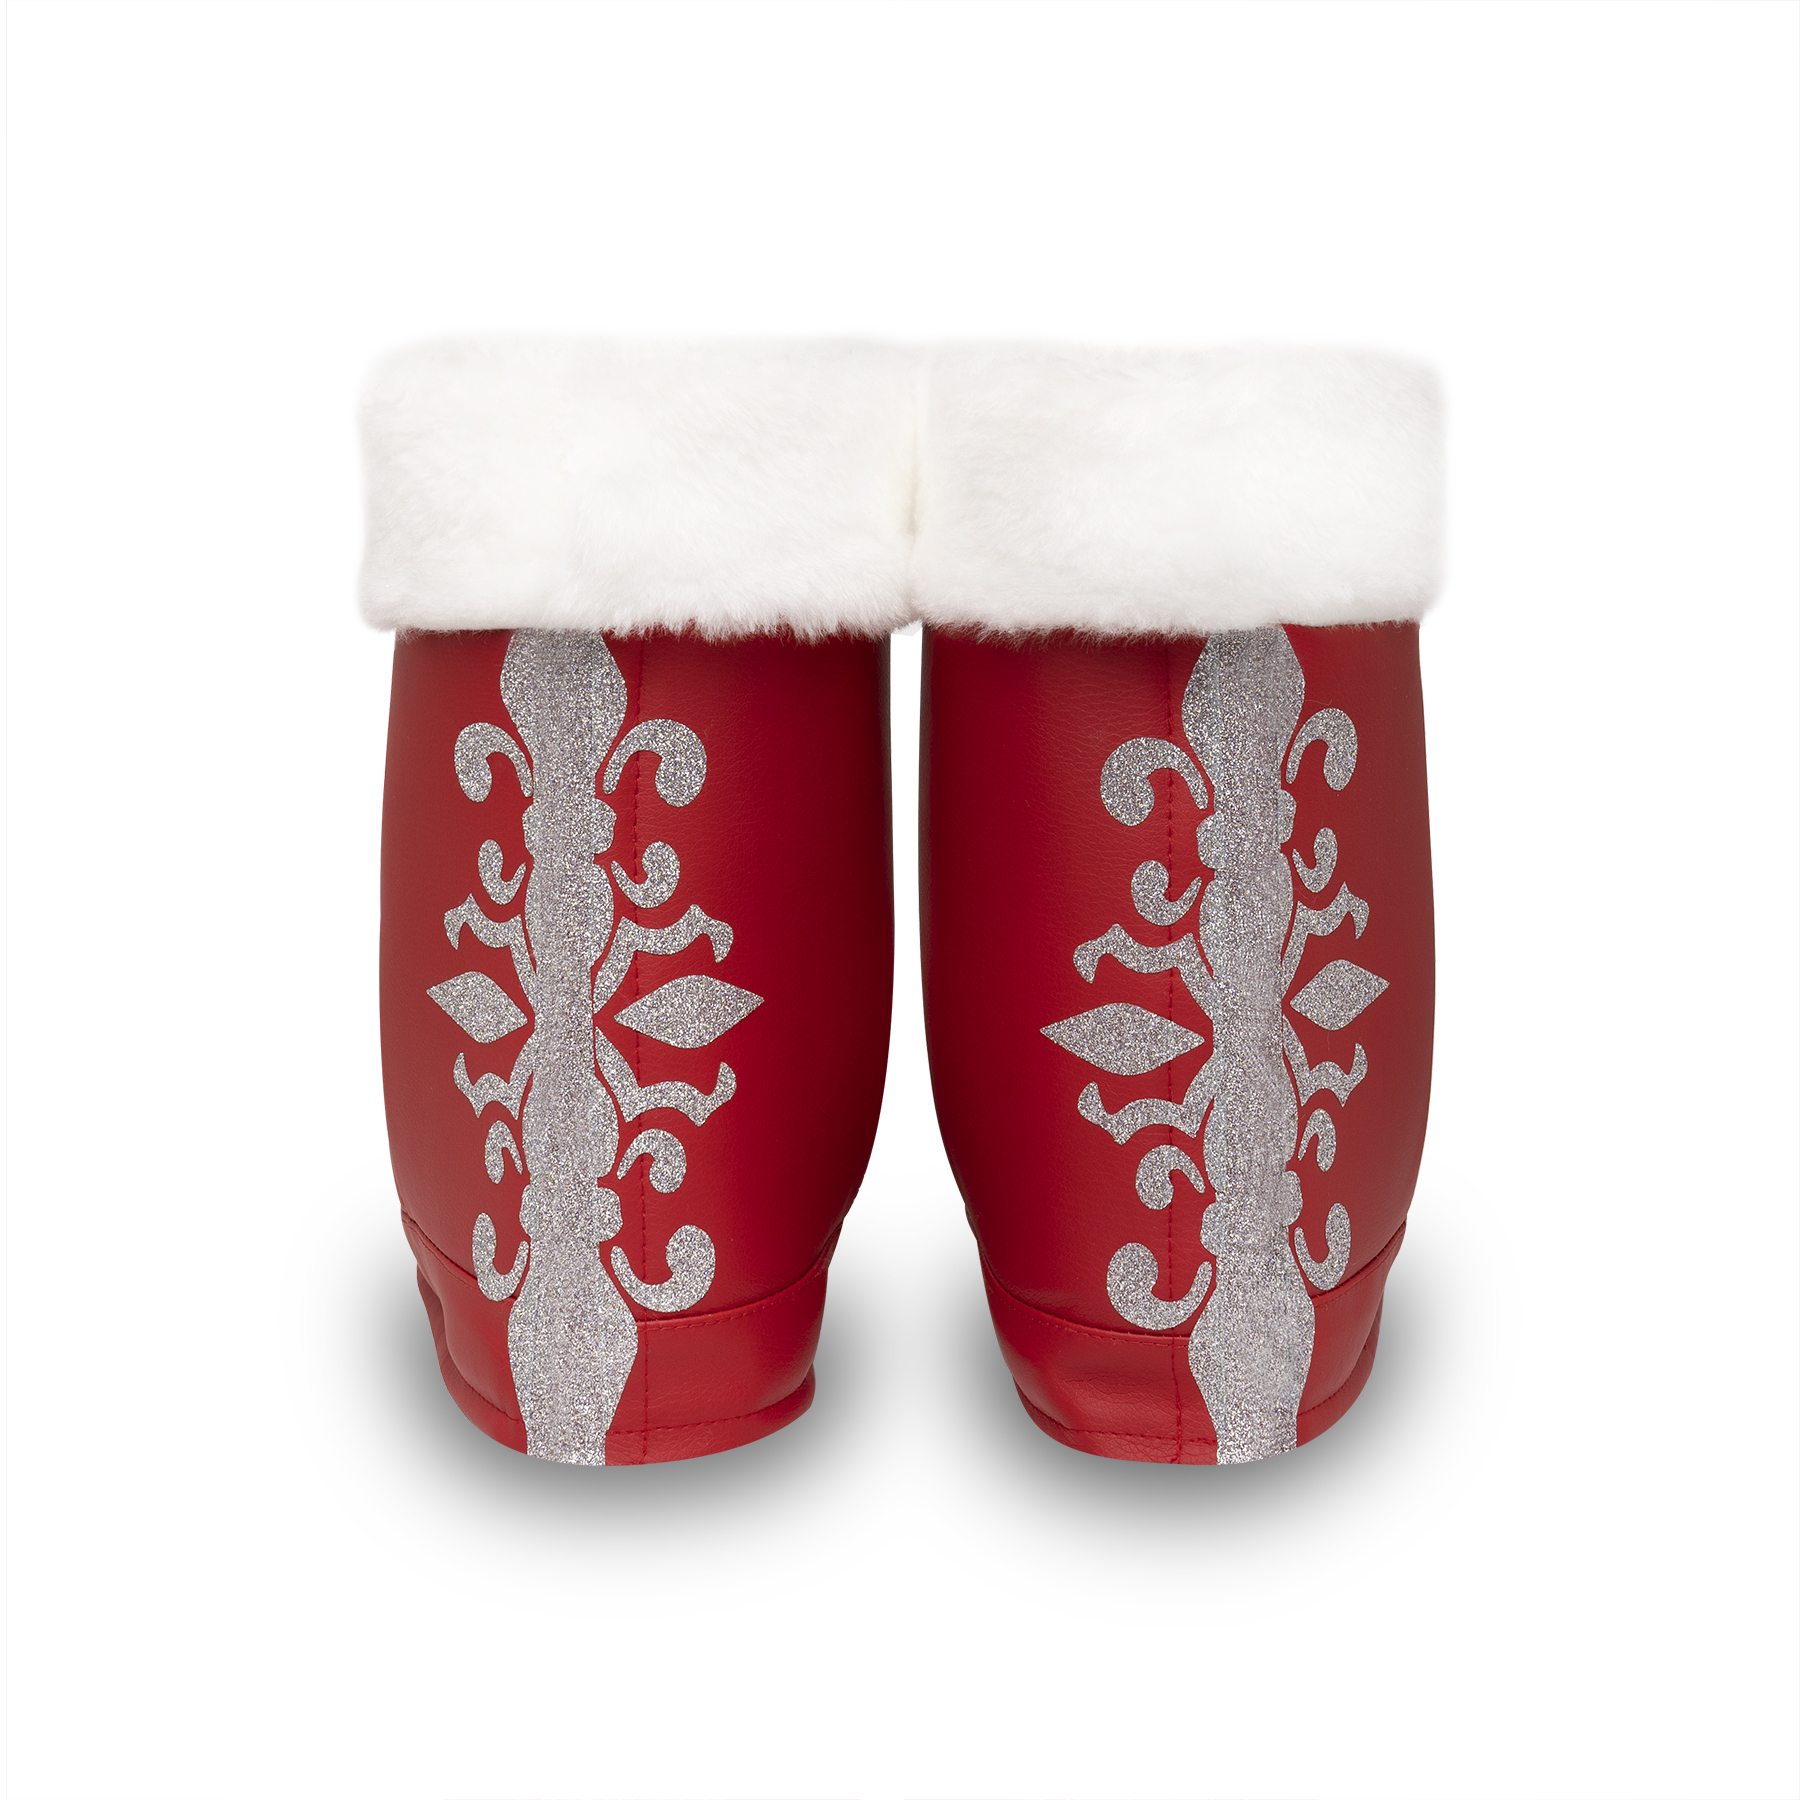 Накладки на взуття Чоботи Діда Мороза червоні зі сріблом